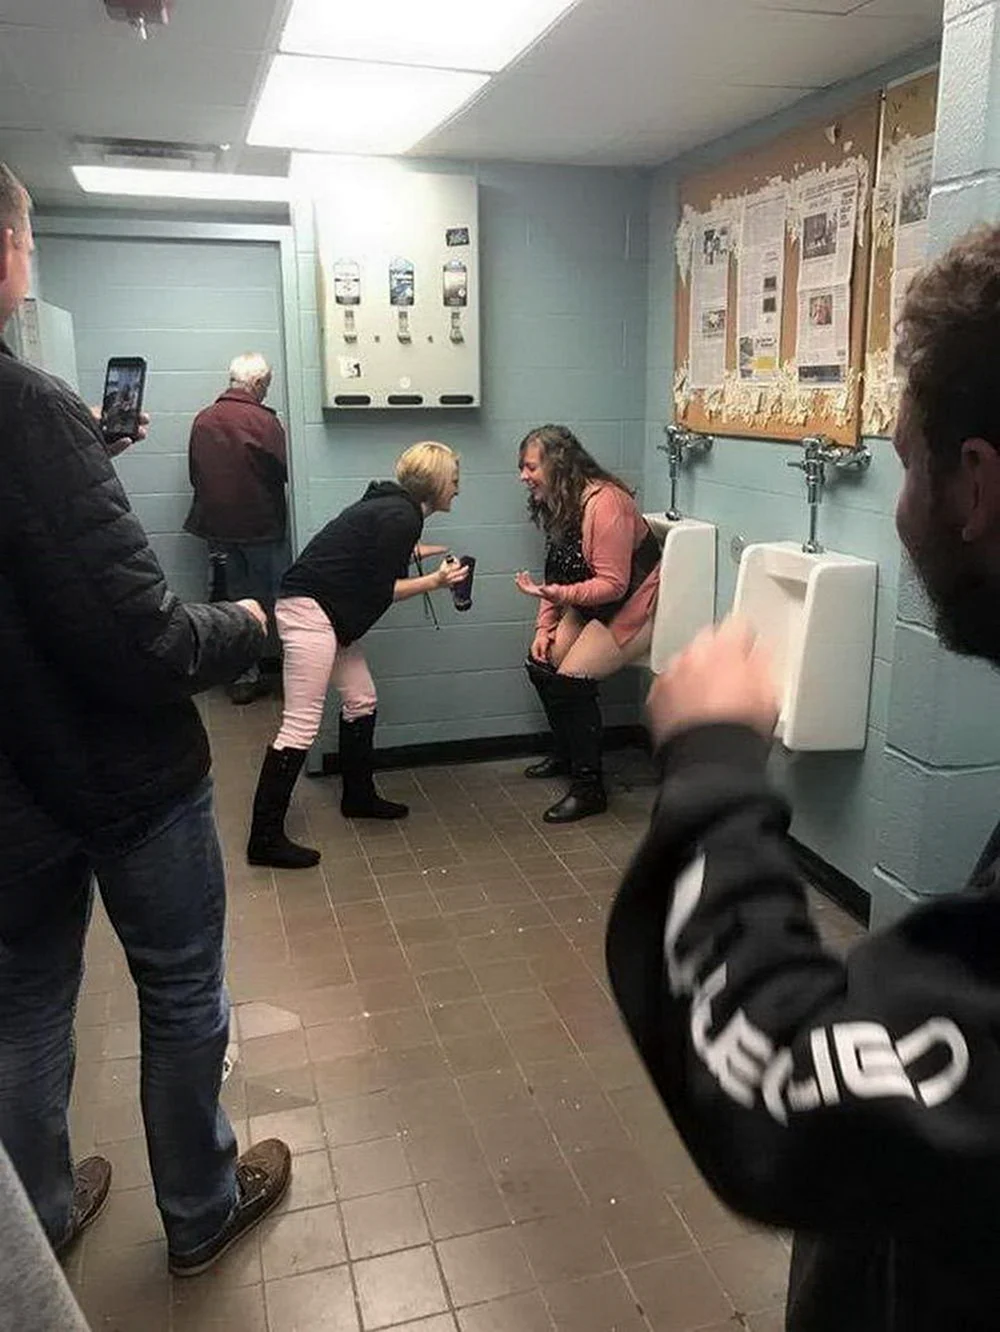 Девушка в мужском туалете